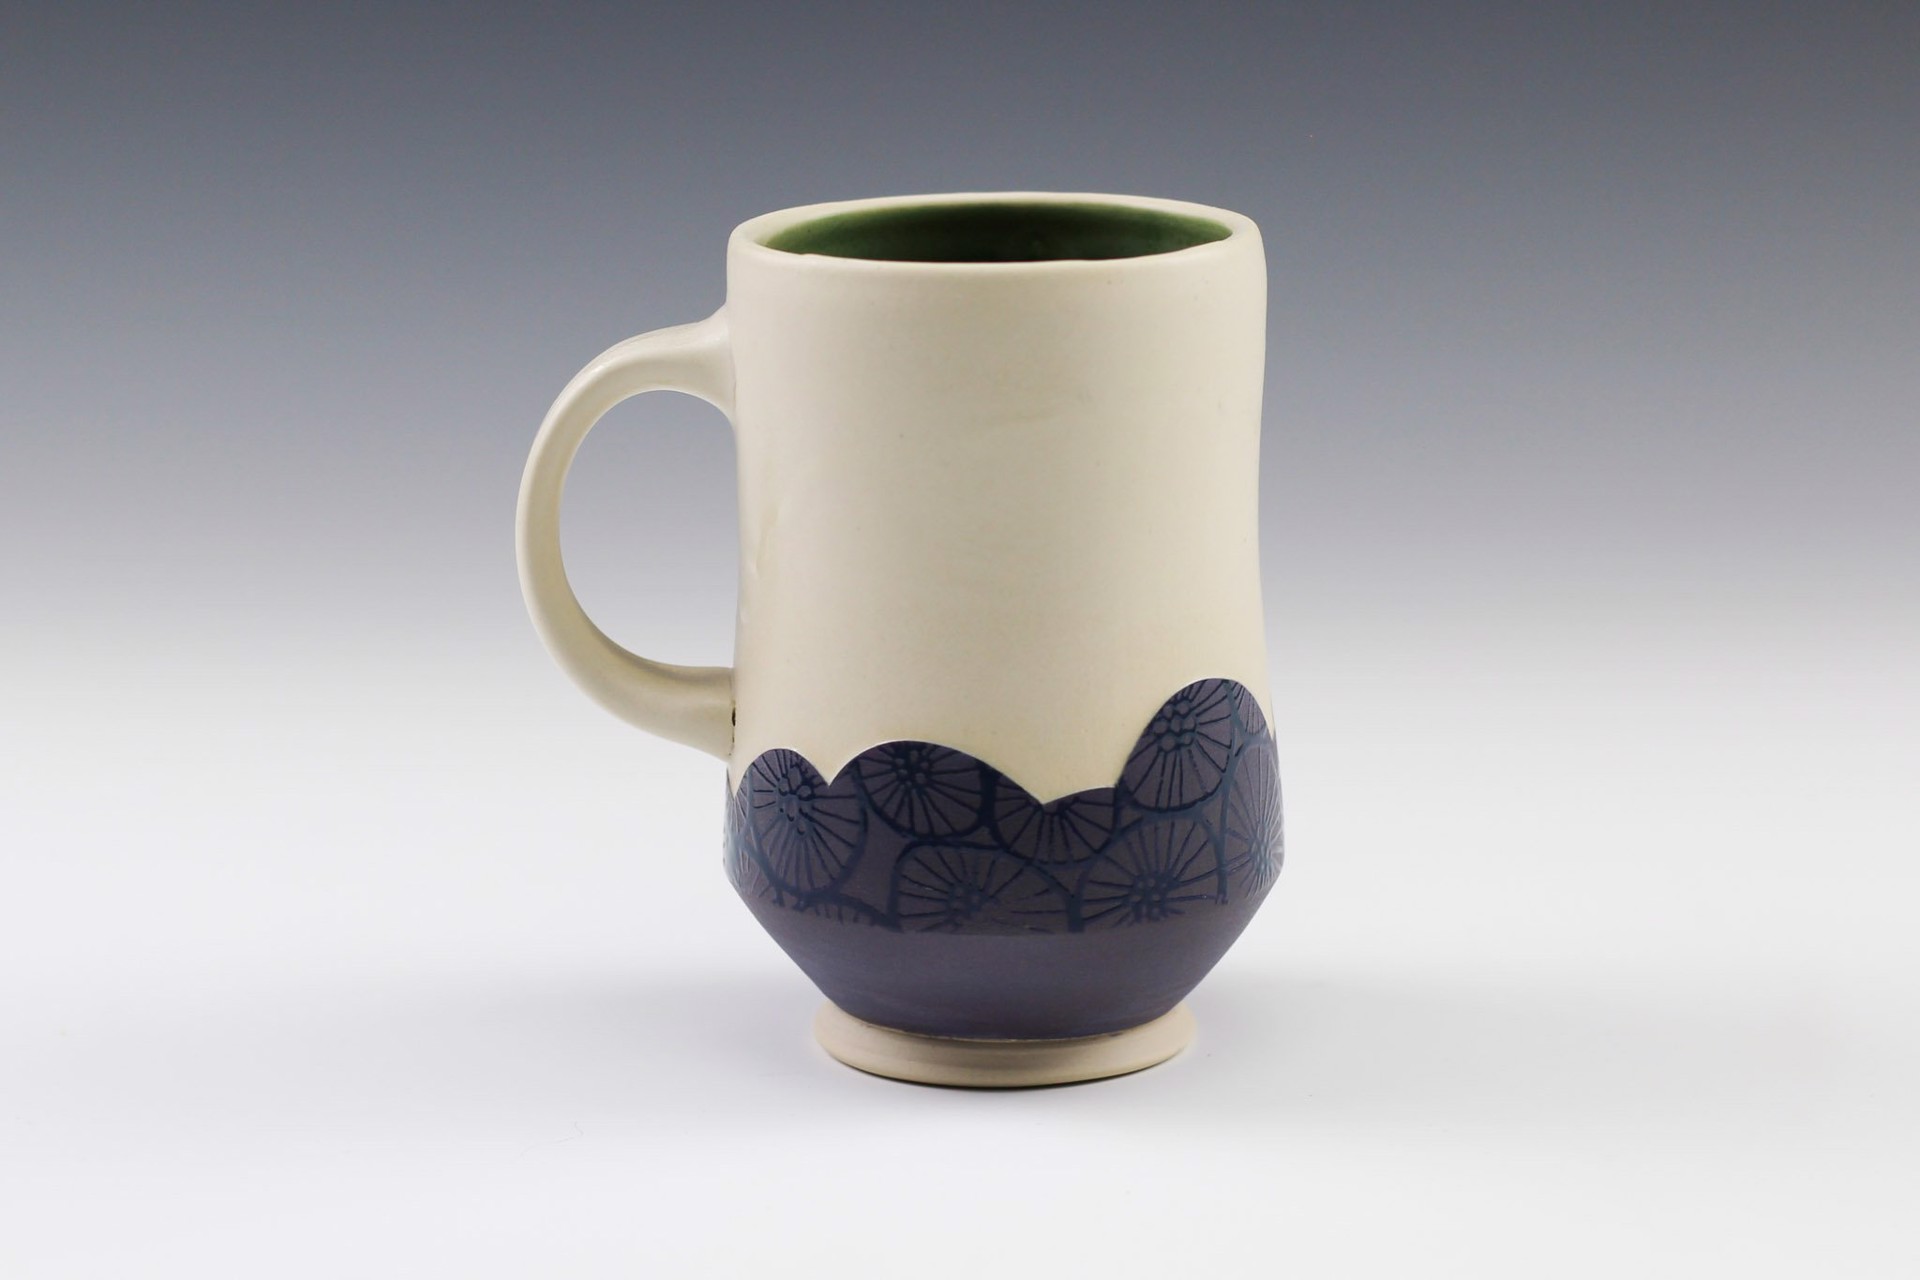 Mug by Rachelle Miller